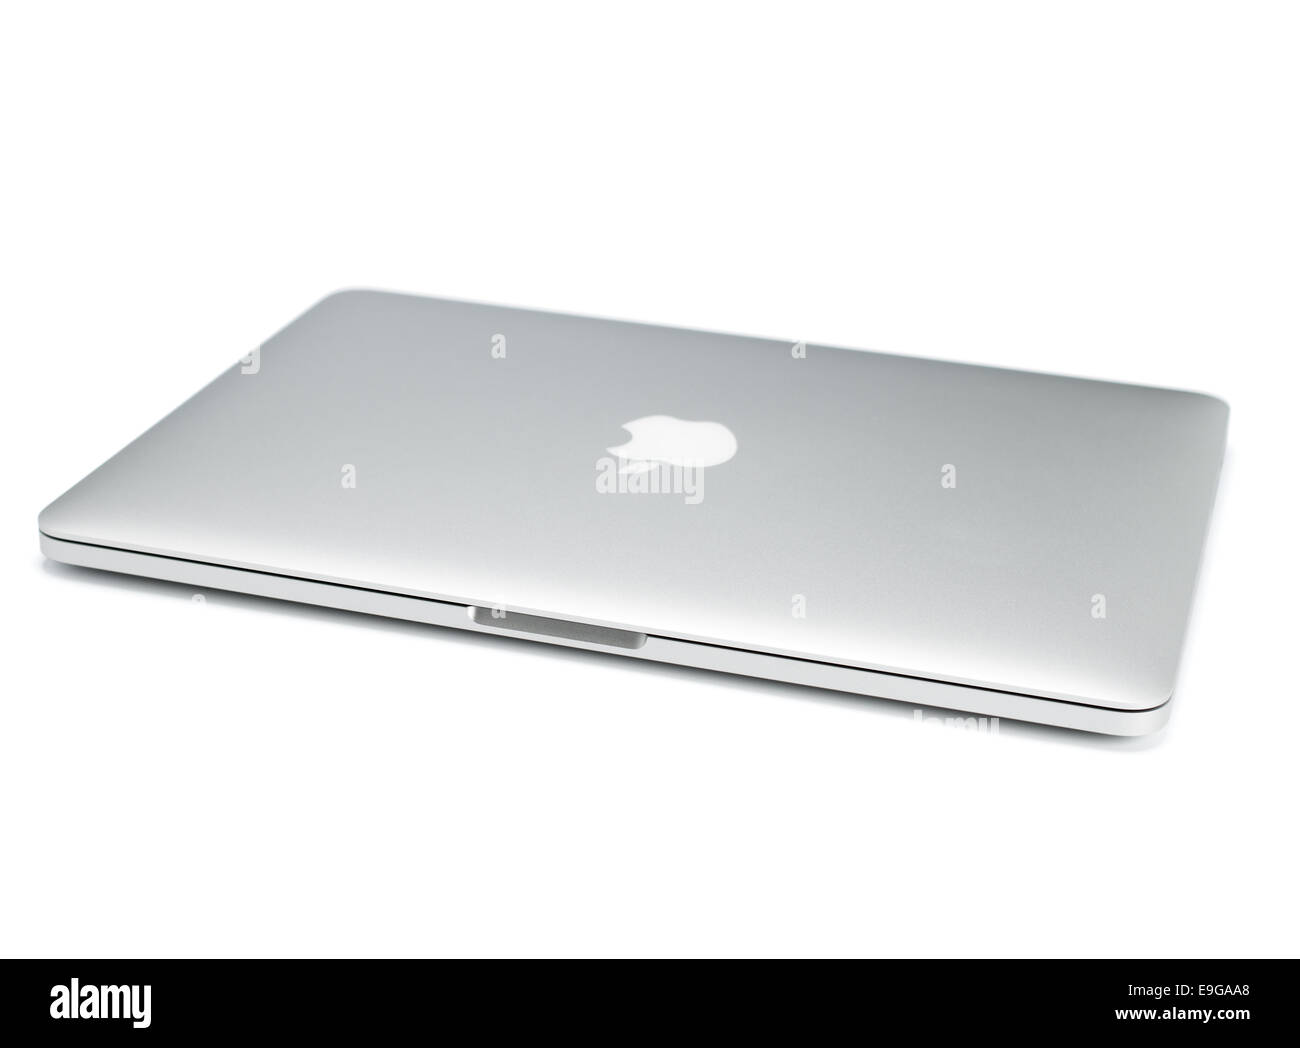 UFA, Russia - 16 Ottobre , 2014: Foto di un MacBook Pro. MacBook Pro Retina è un portatile sviluppato da Apple Inc. Foto Stock